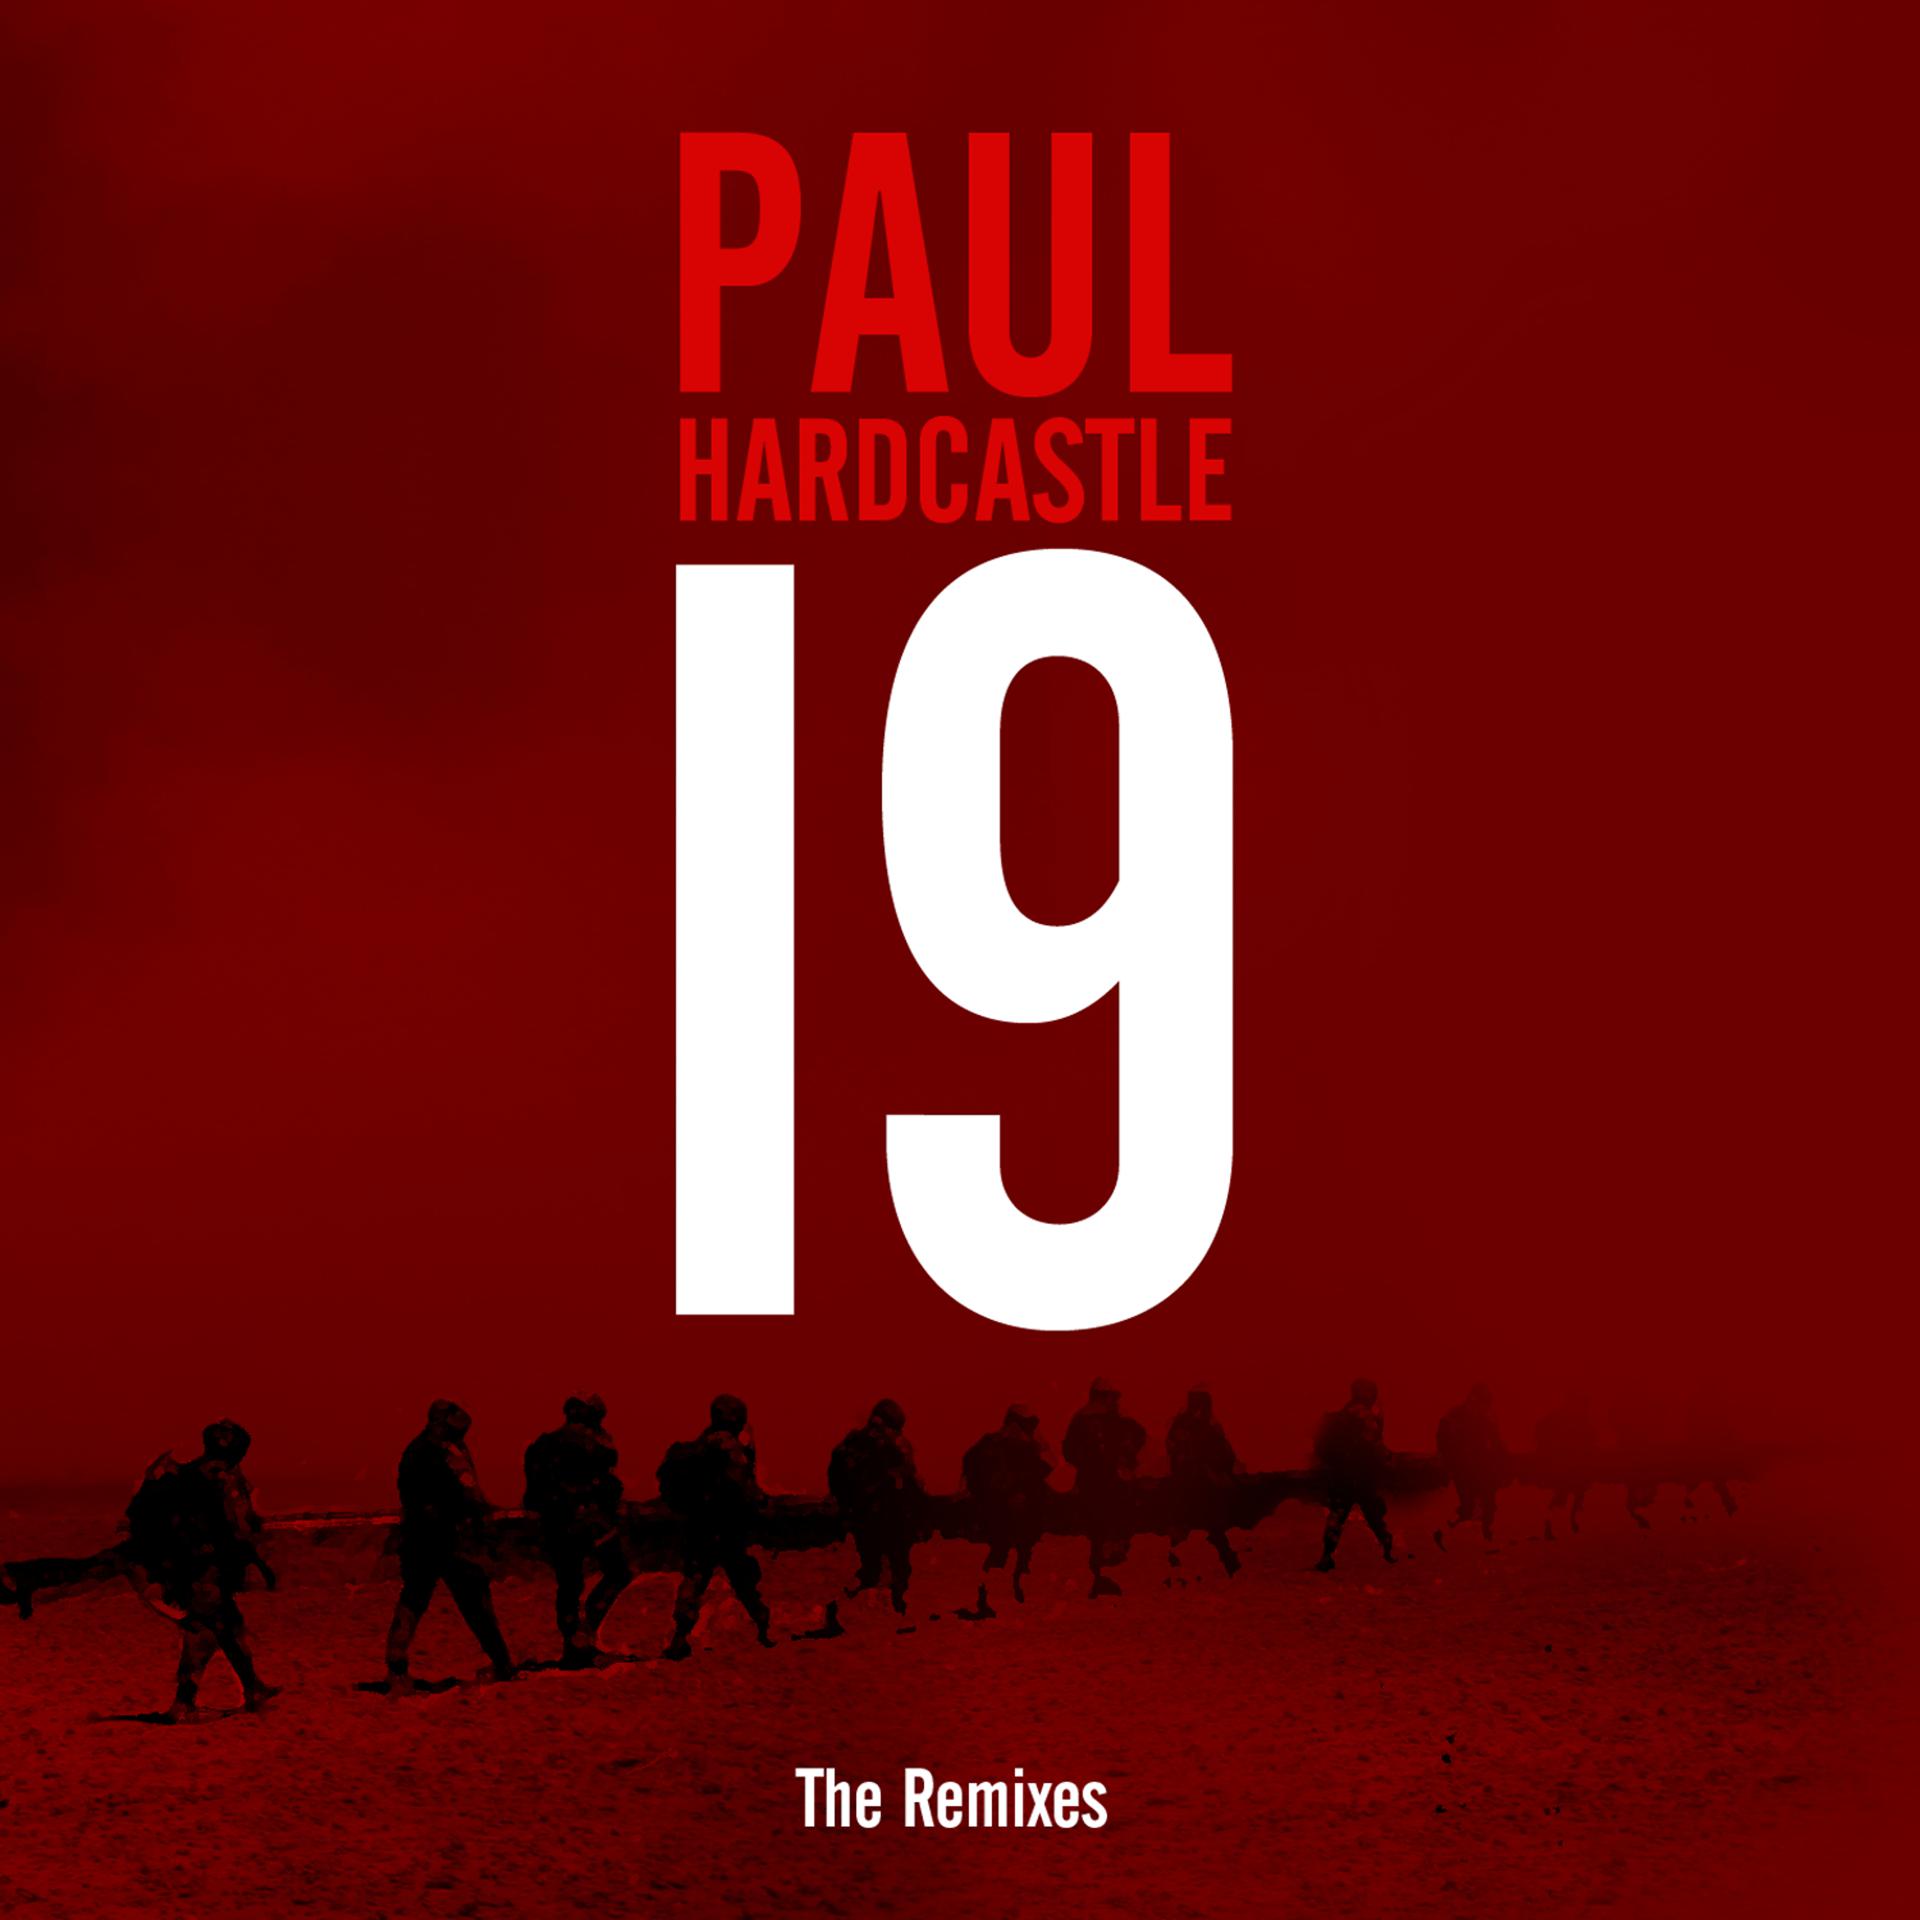 Paul hardcastle. Paul Hardcastle 19. Paul Hardcastle - Hardcastle 2. Paul Hardcastle nineteen.